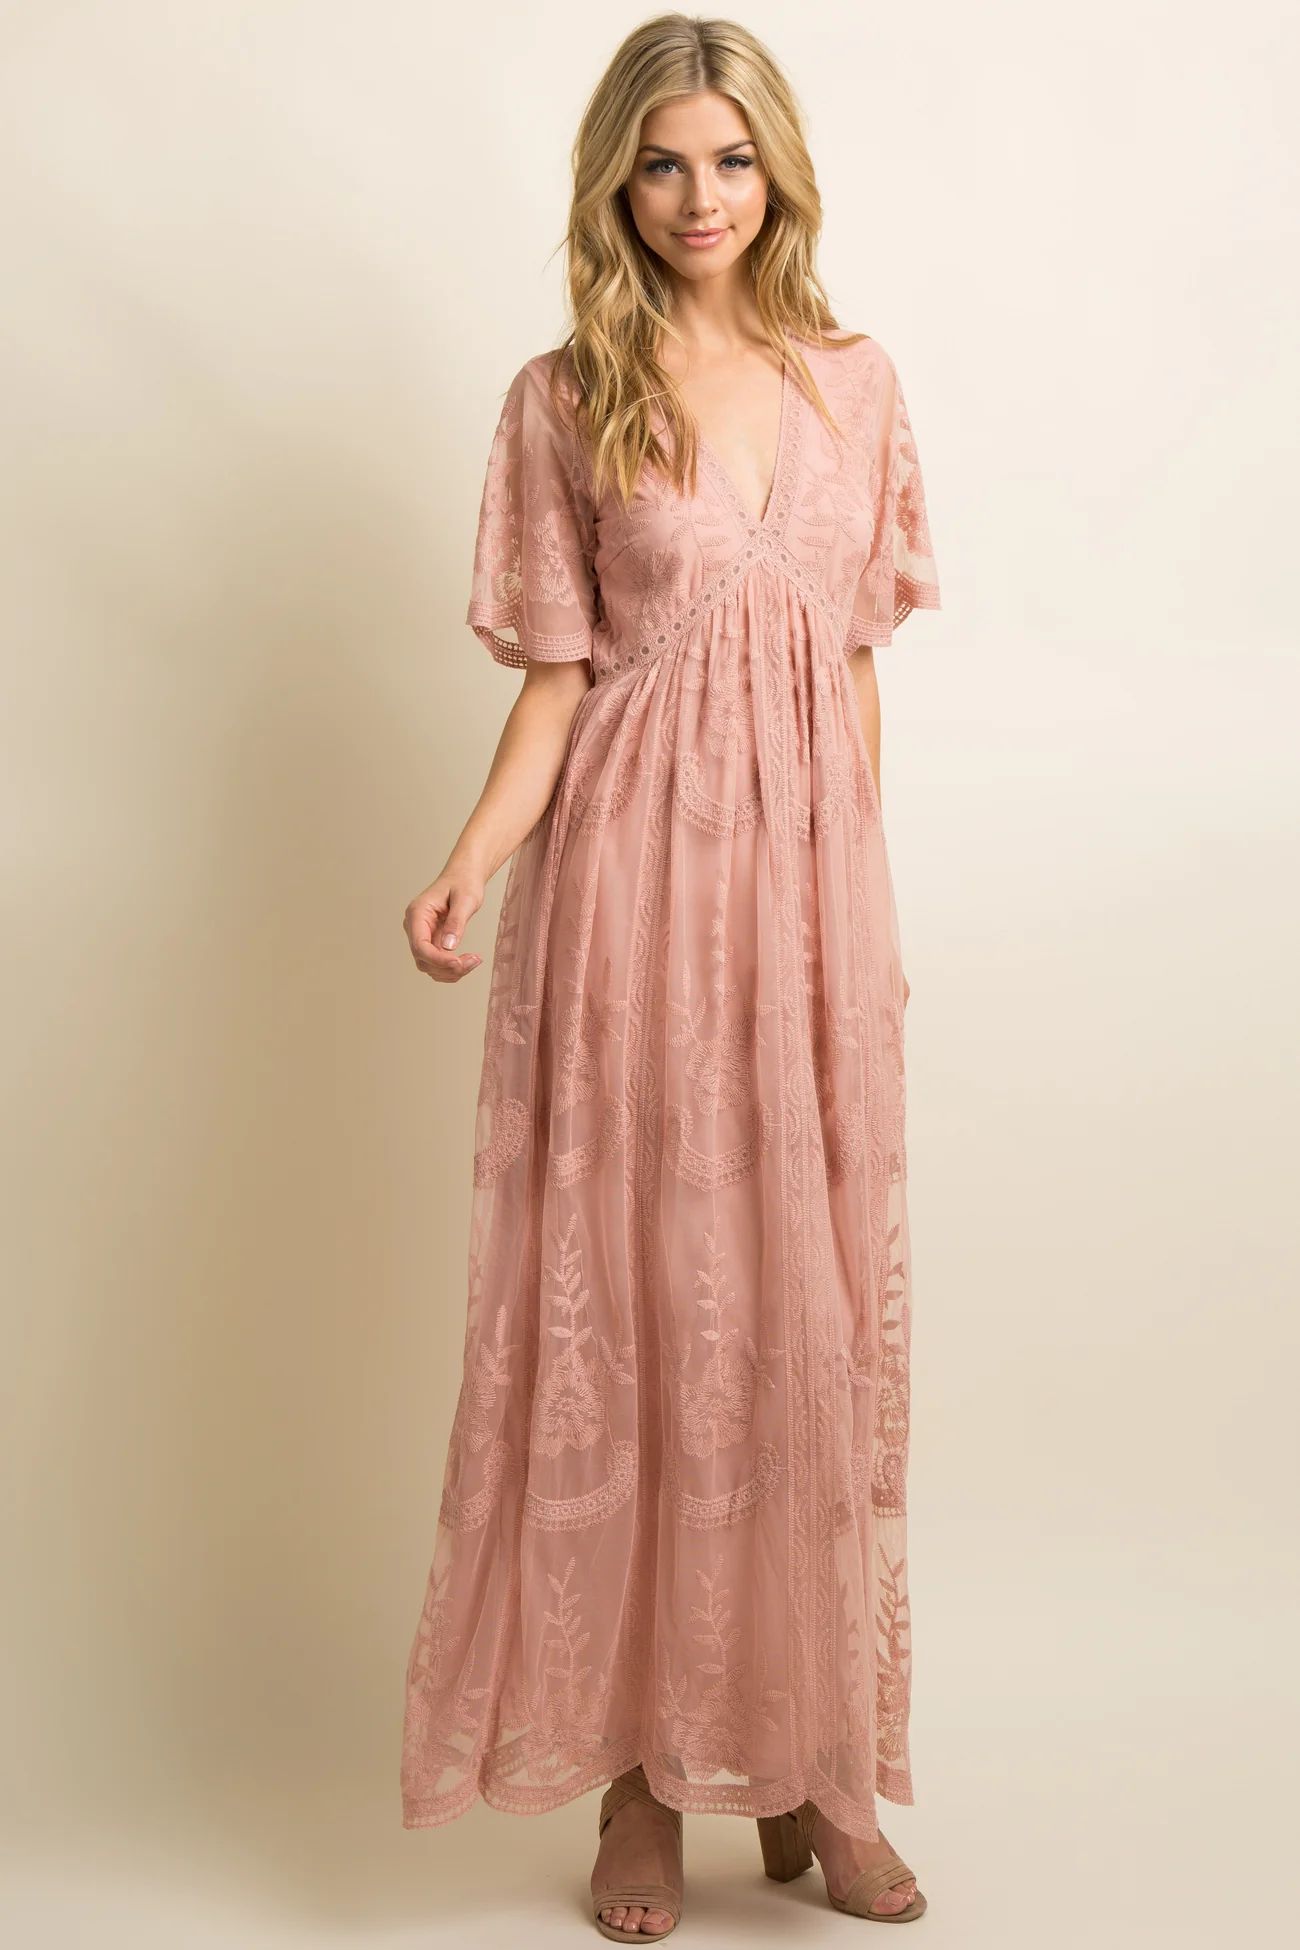 Light Pink Lace Mesh Overlay Maxi Dress | PinkBlush Maternity